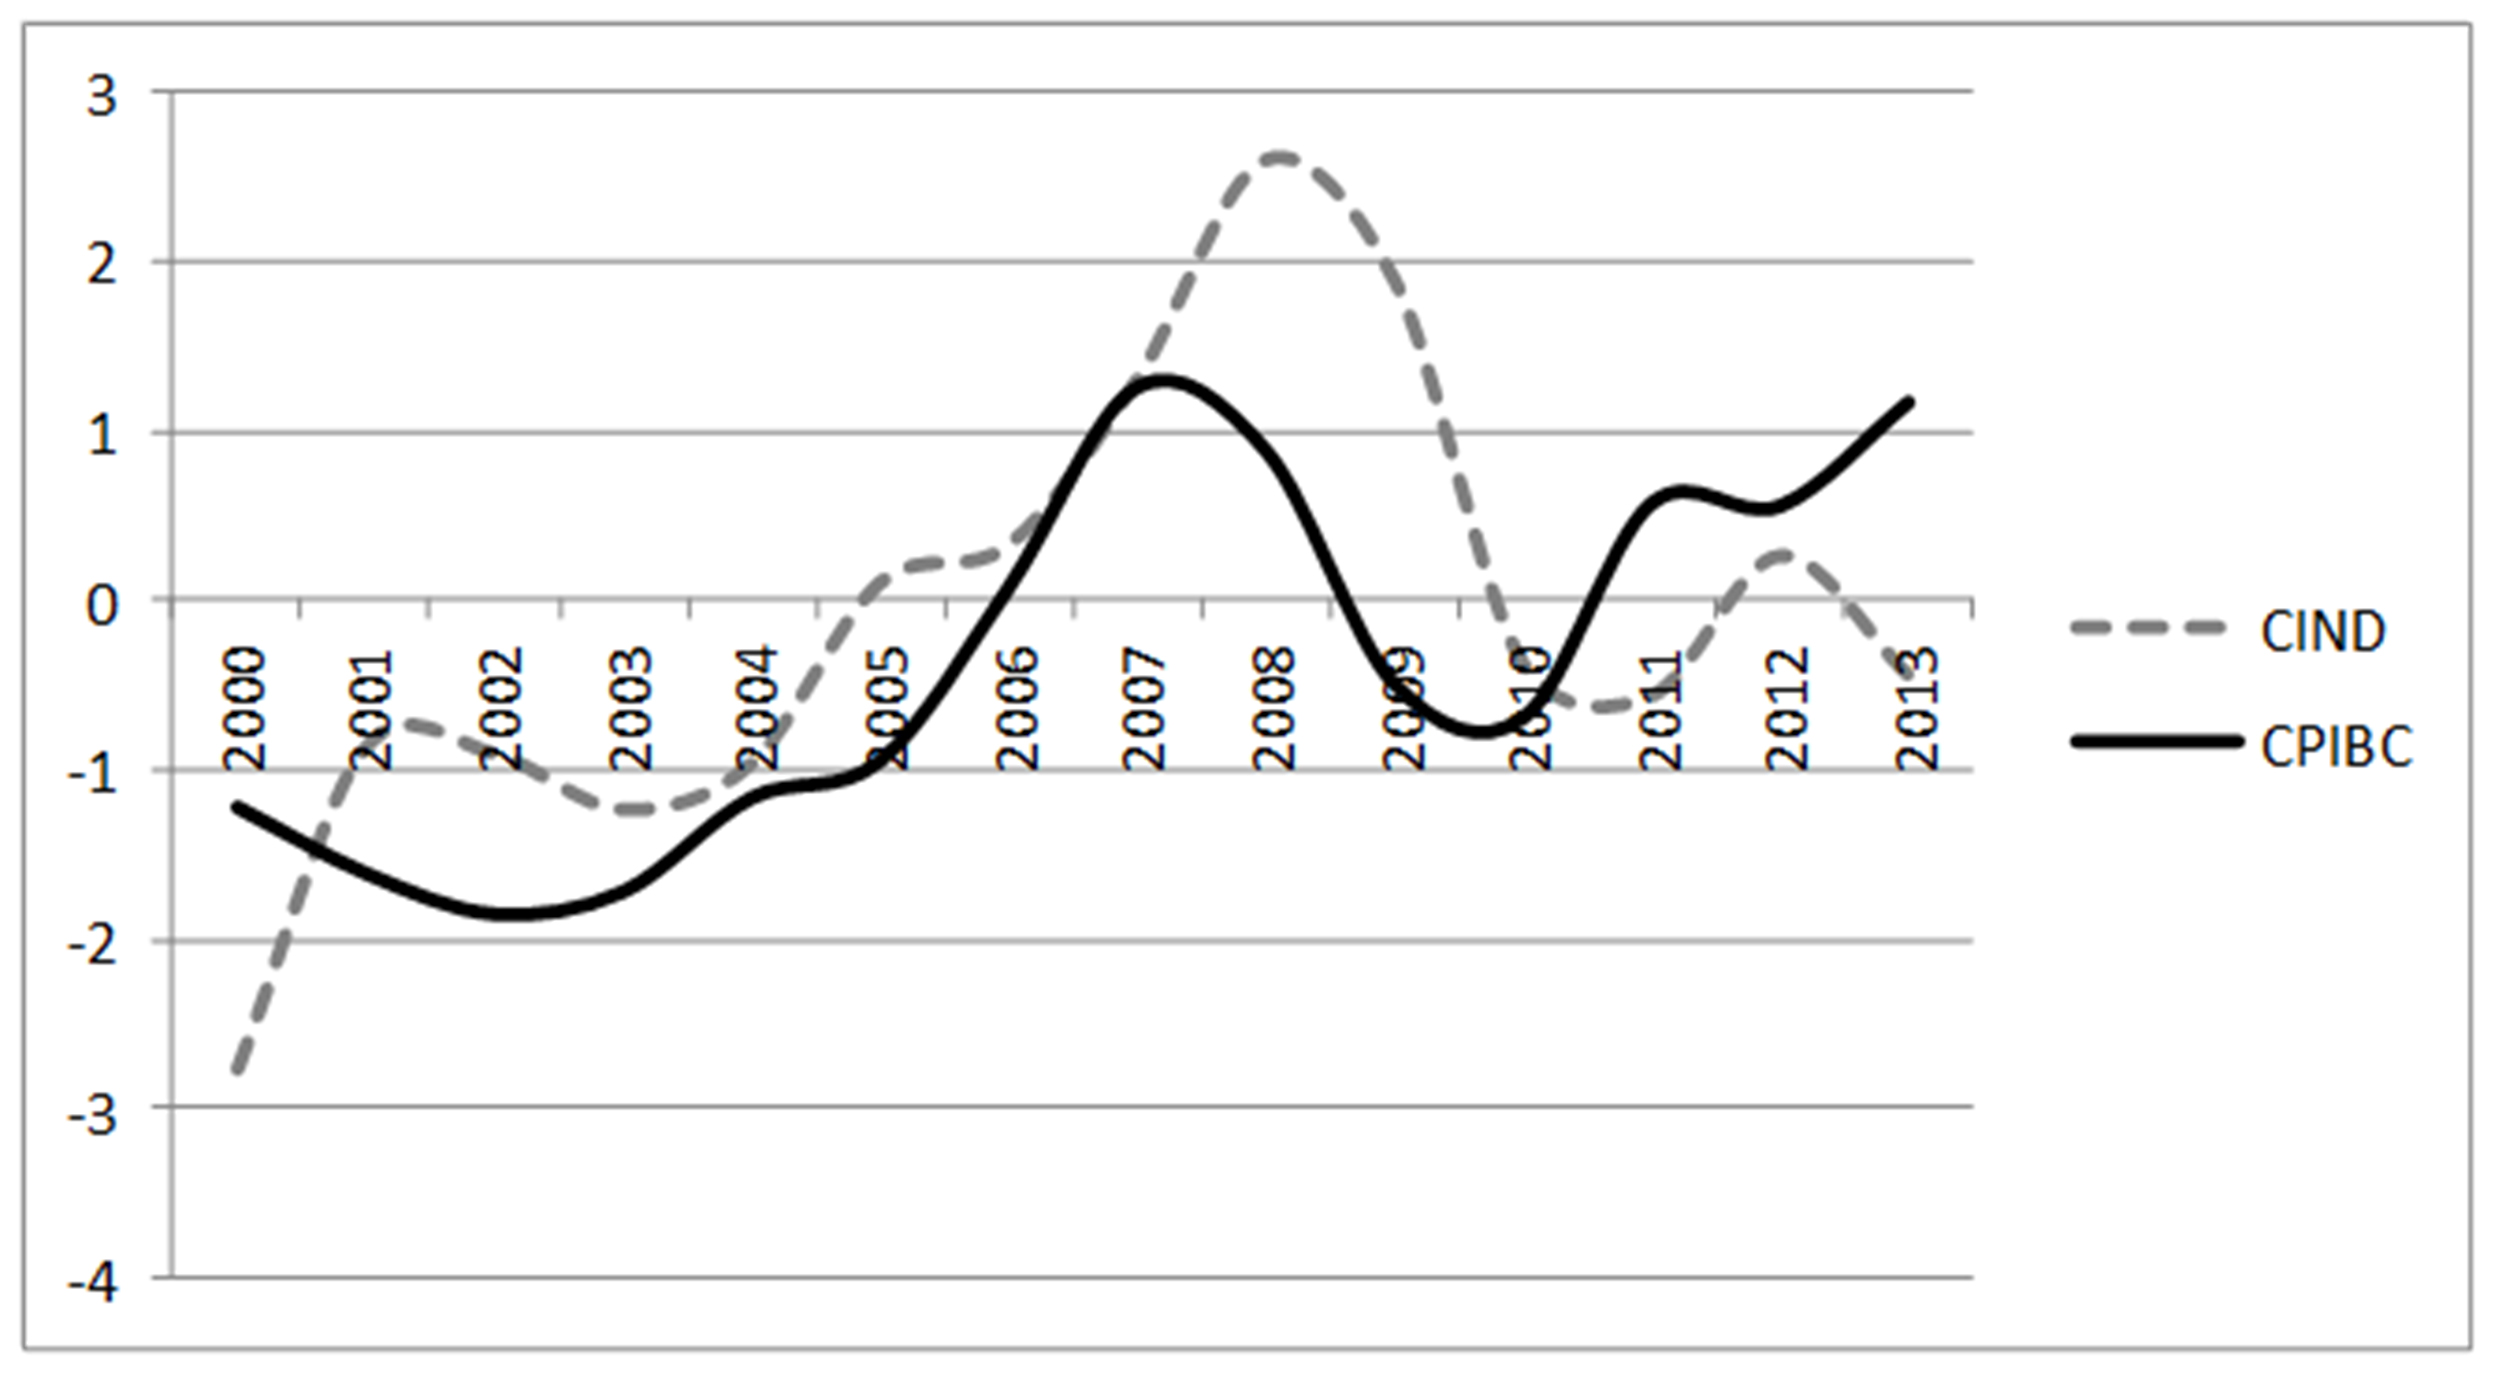 Aplicación de filtro de Hodrick-Prescott
al ciclo del sector industrial en el periodo de 2000 a 2013